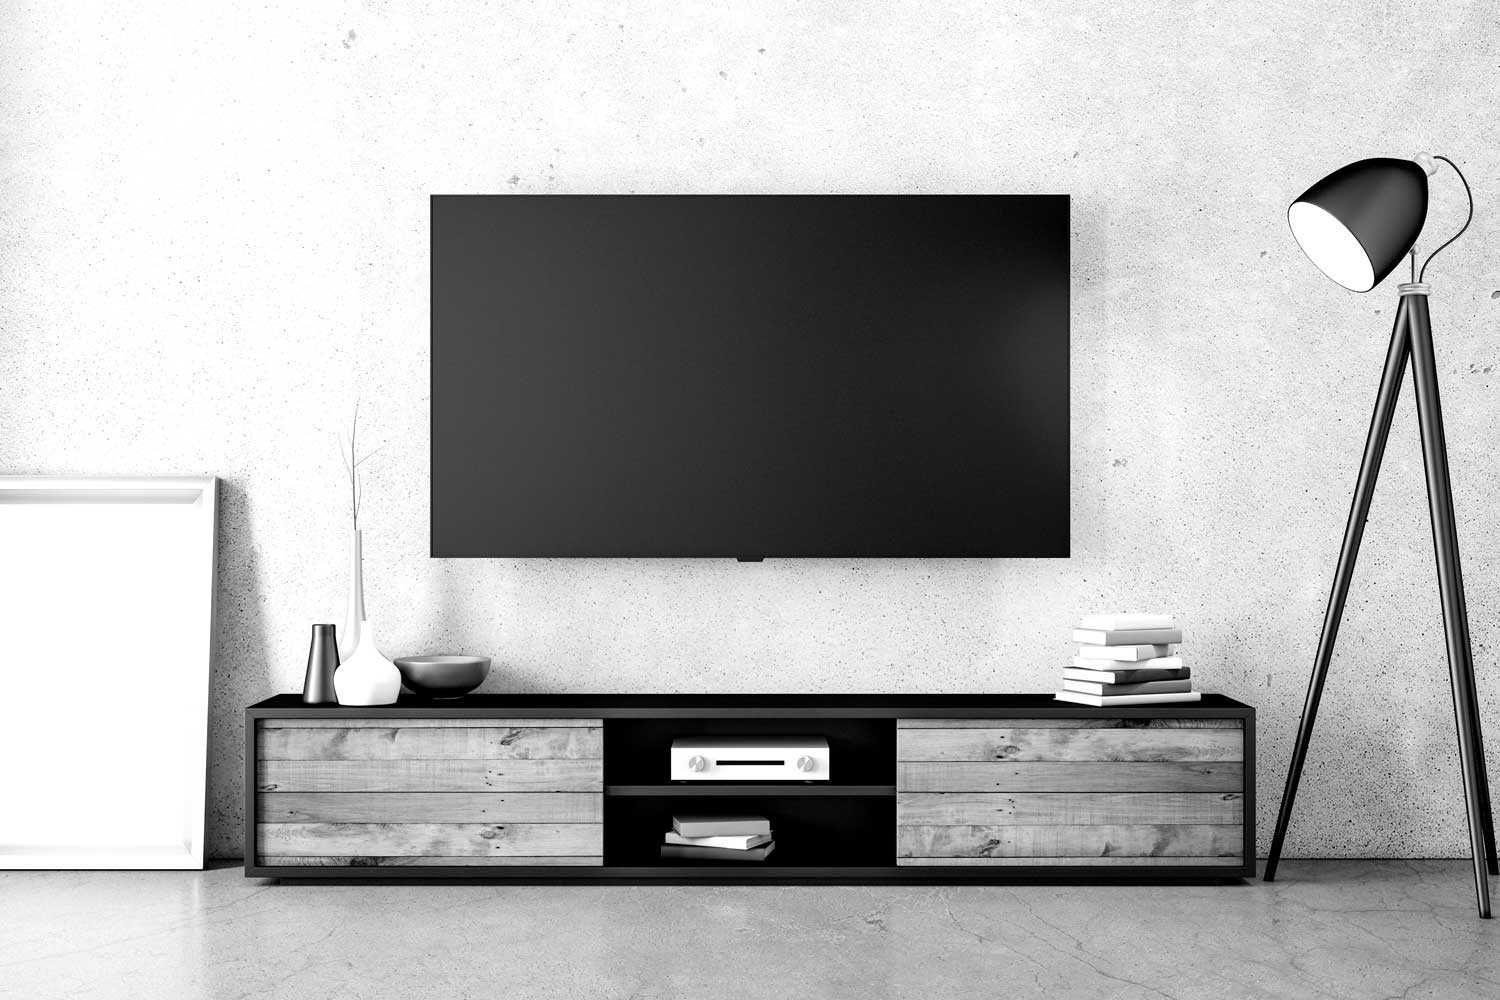 Montaż telewizora na ścianie | instalacja | konfiguracja |  19 - 120"